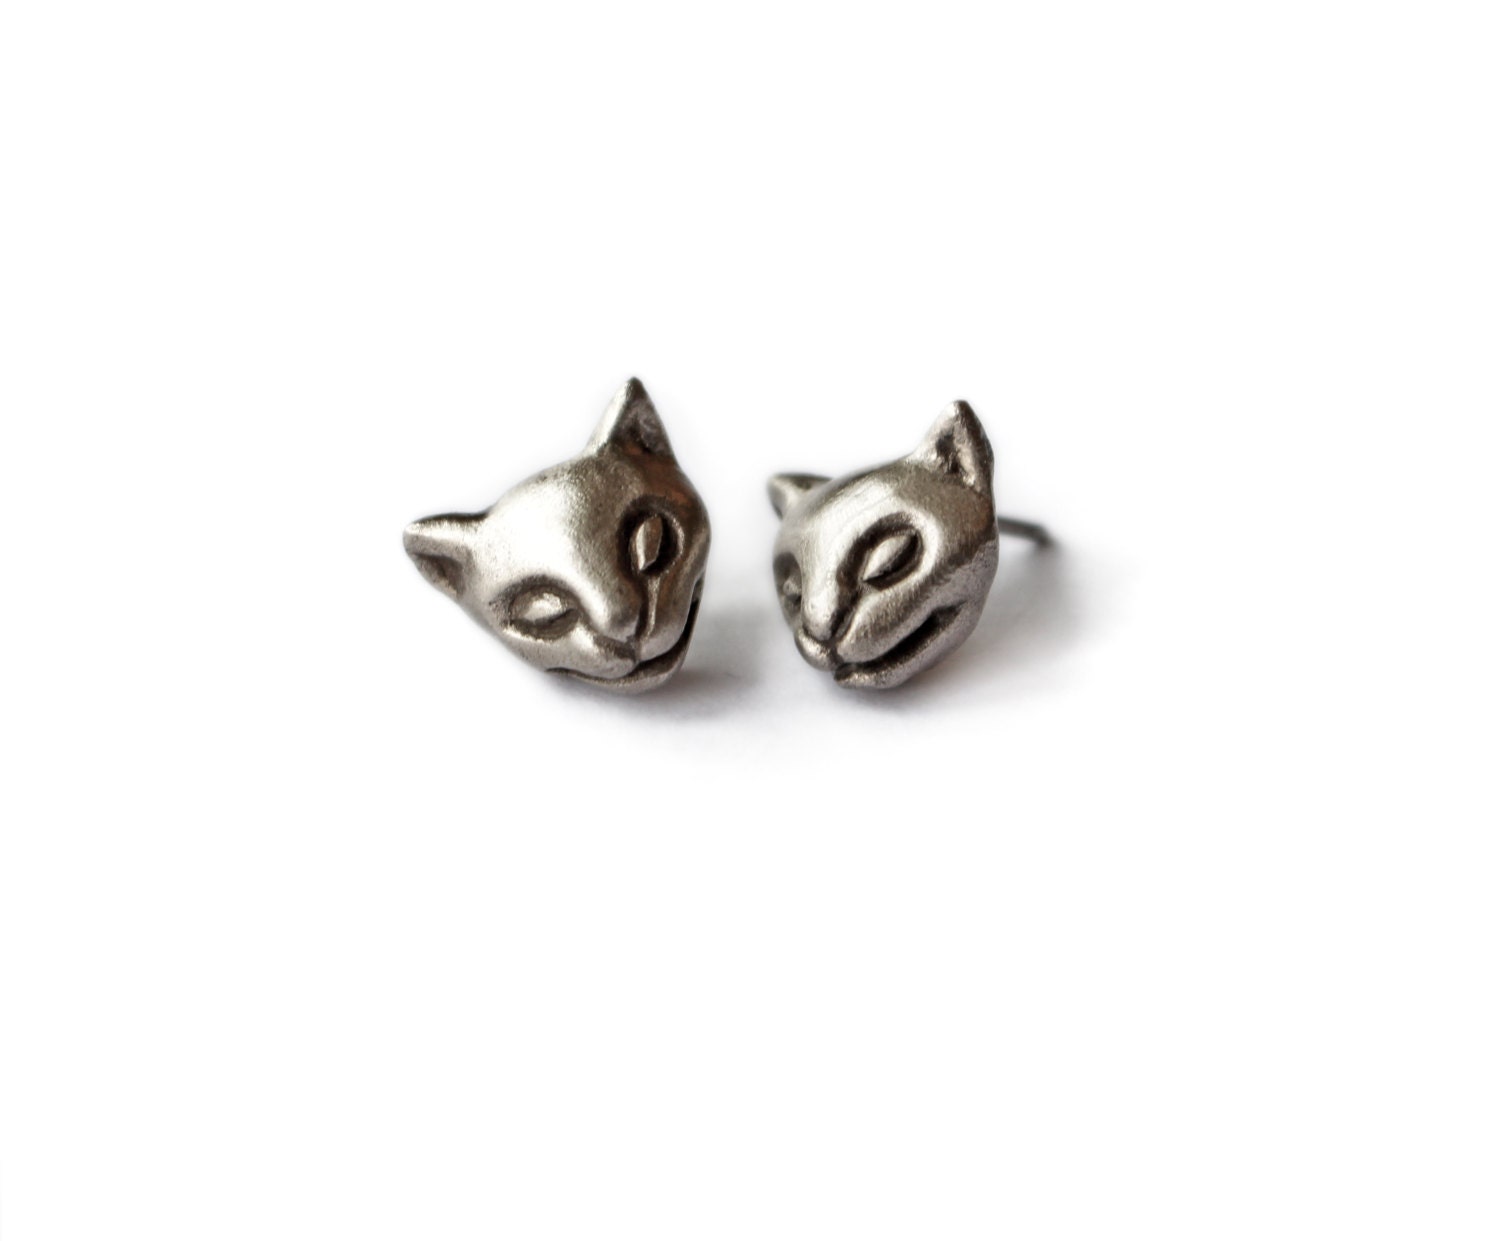 Silver cat earrings niobium or titanium post | Etsy